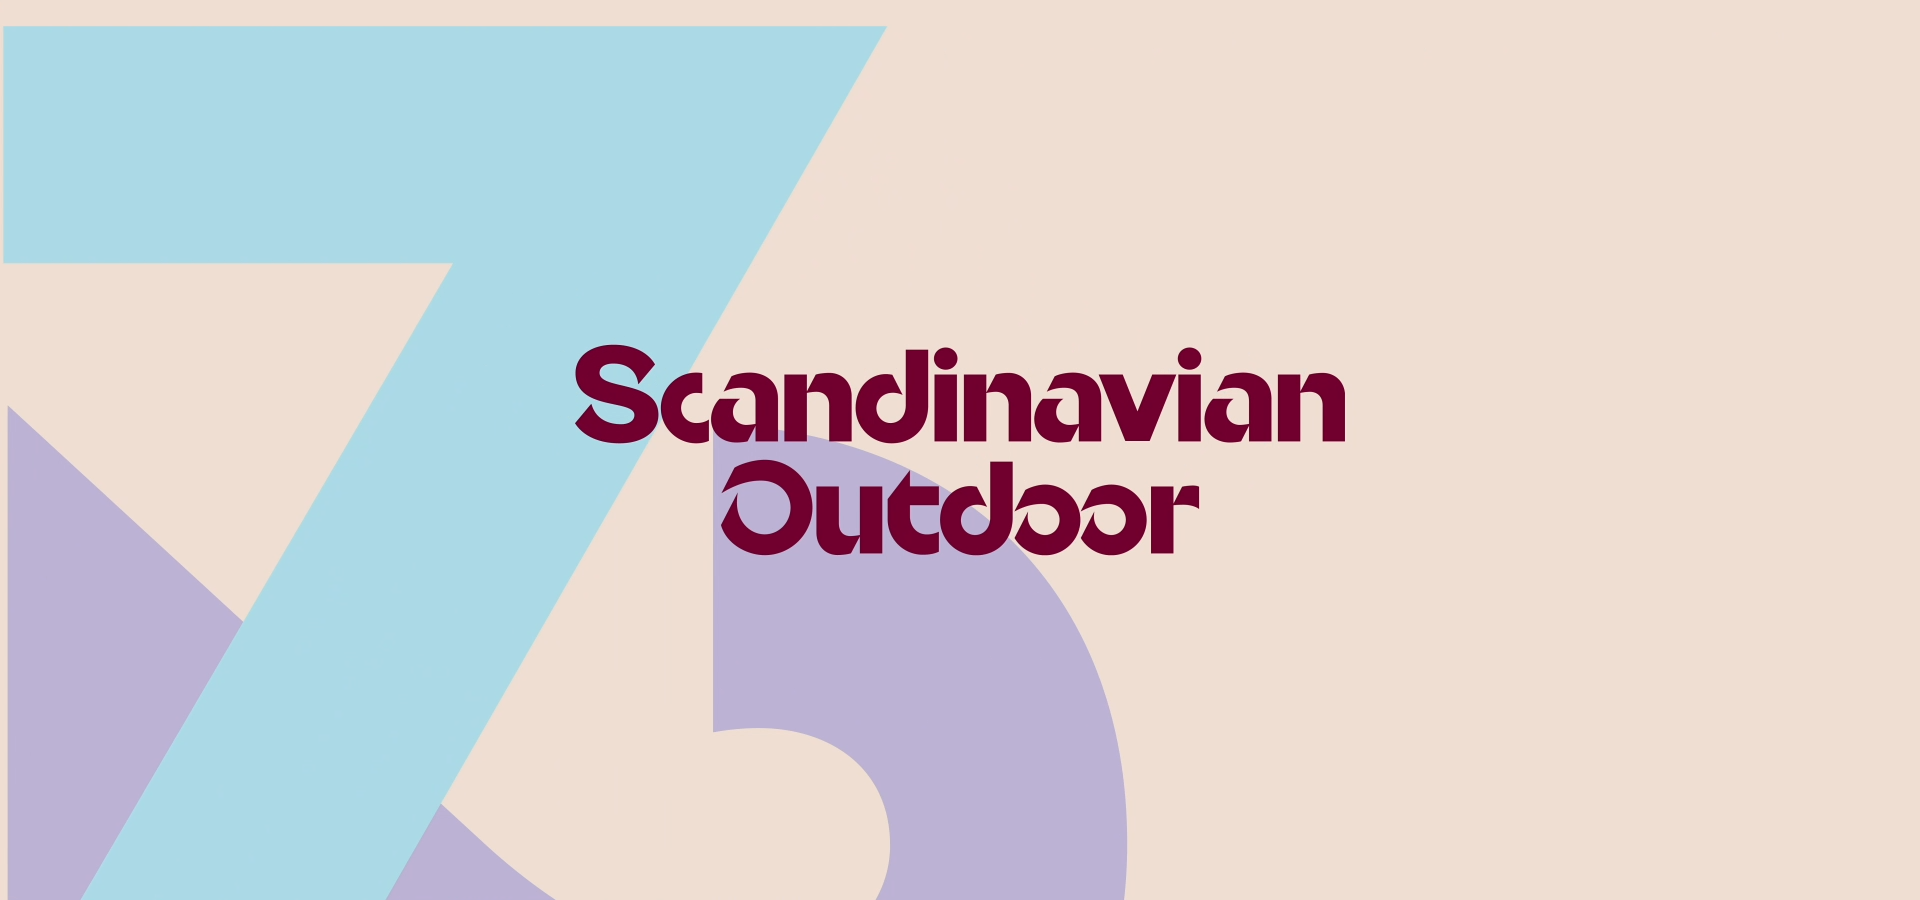 scandinavian outdoor